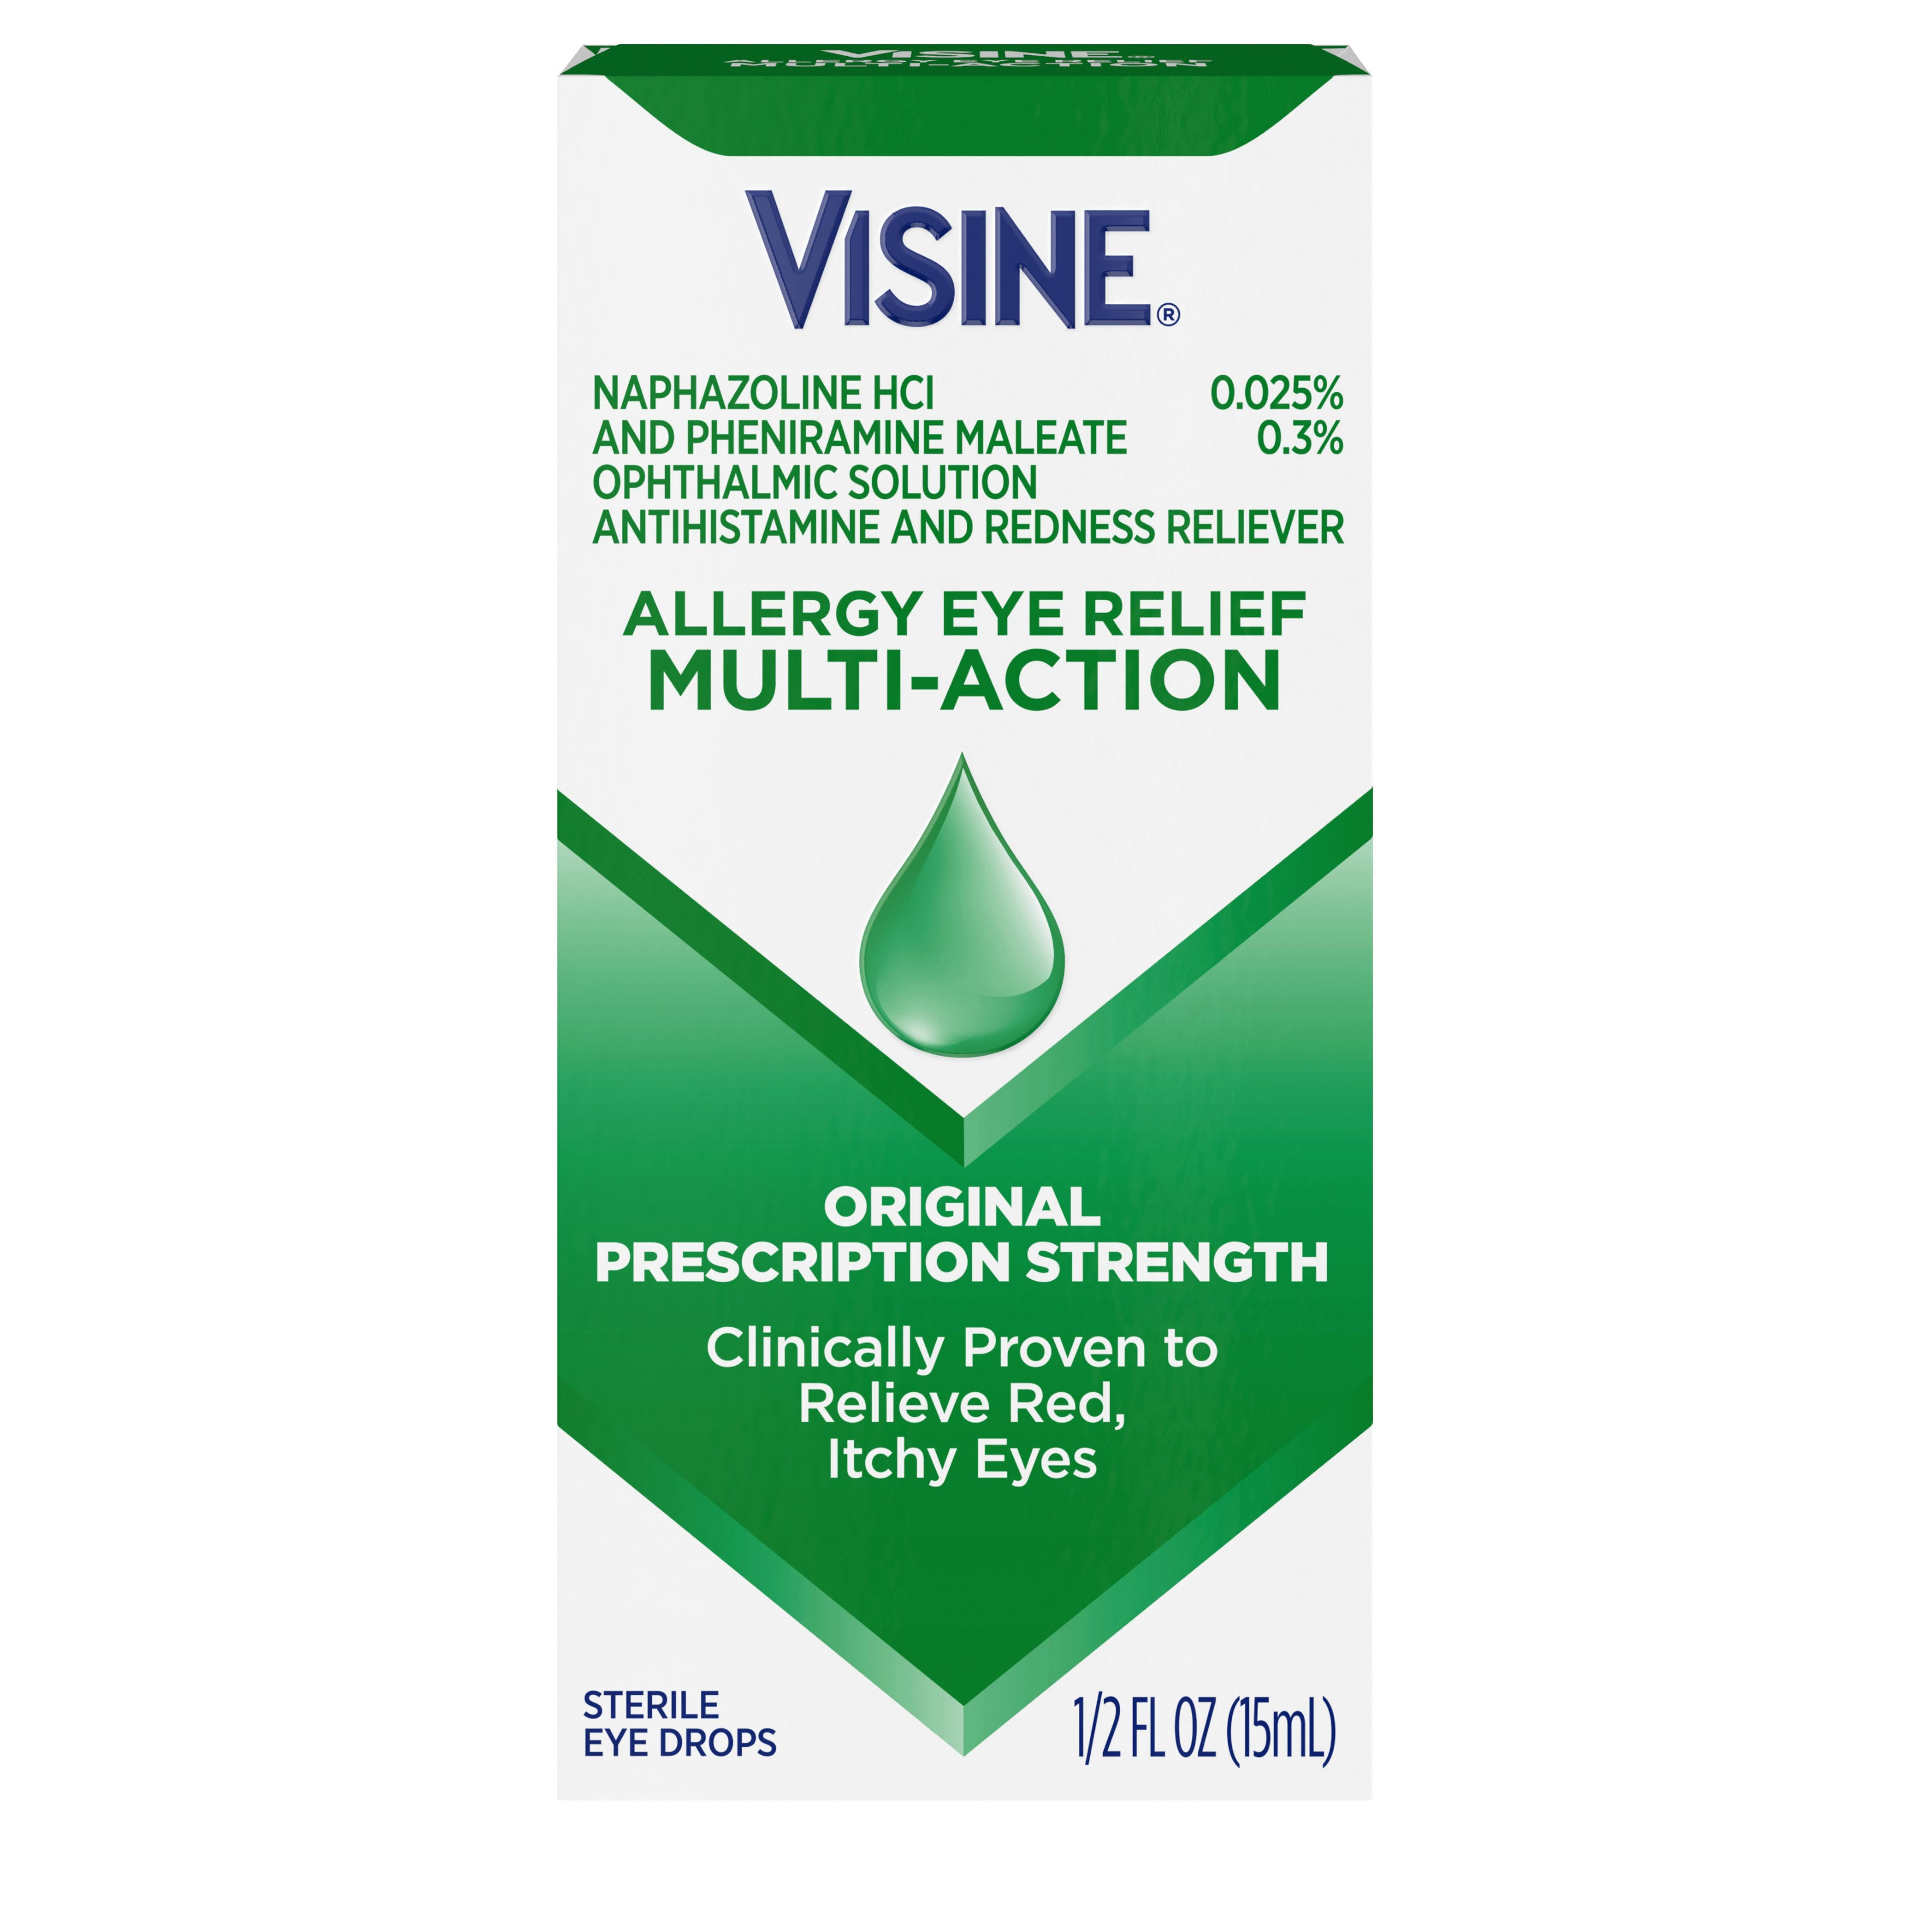 Visine Allergy Eye Relief Multi-Action Eye Drops 1/2 fl oz (15 ml)